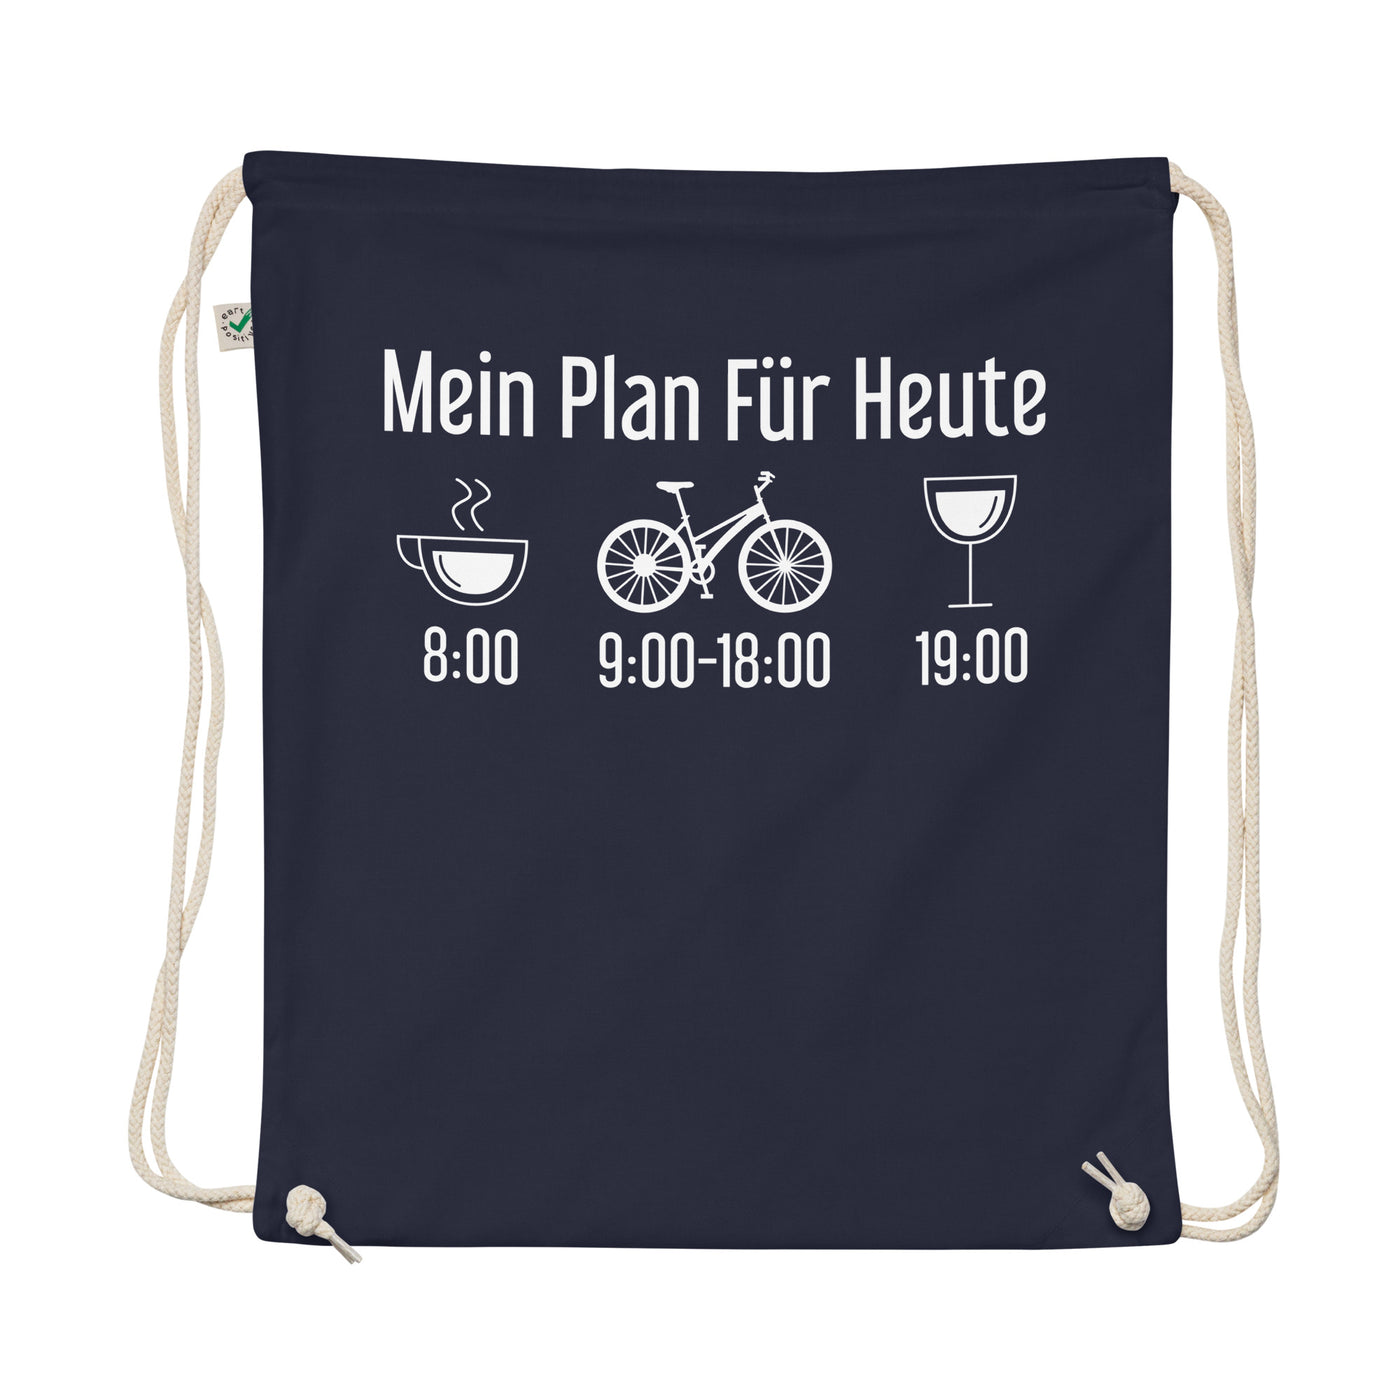 Mein Plan Für Heute - Organic Turnbeutel fahrrad